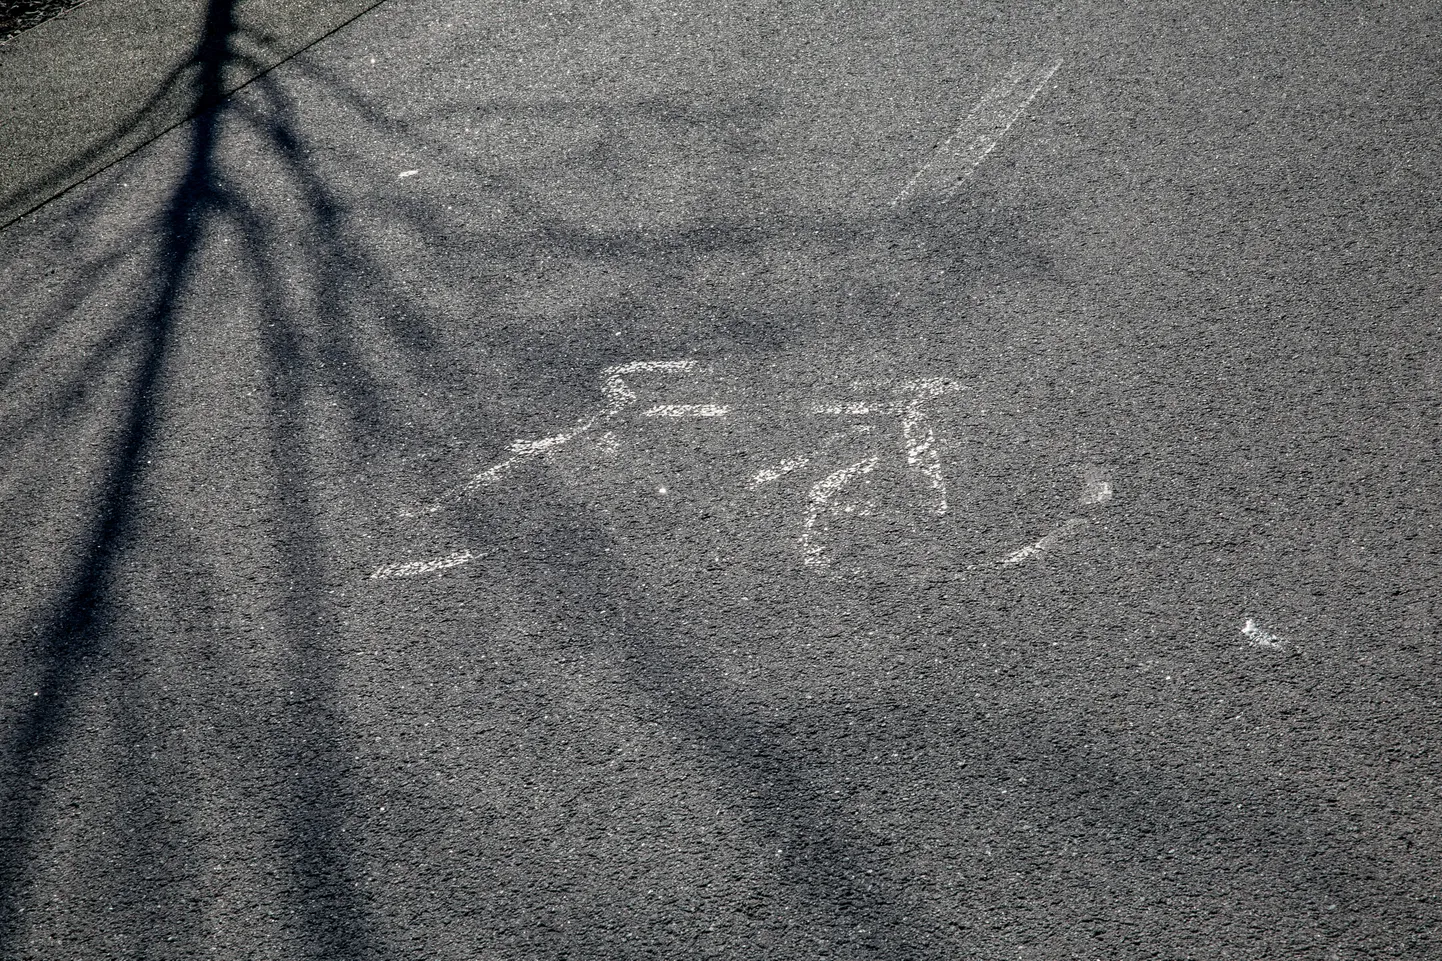 Rattaraja märgis Reidi tee jalgrattateel